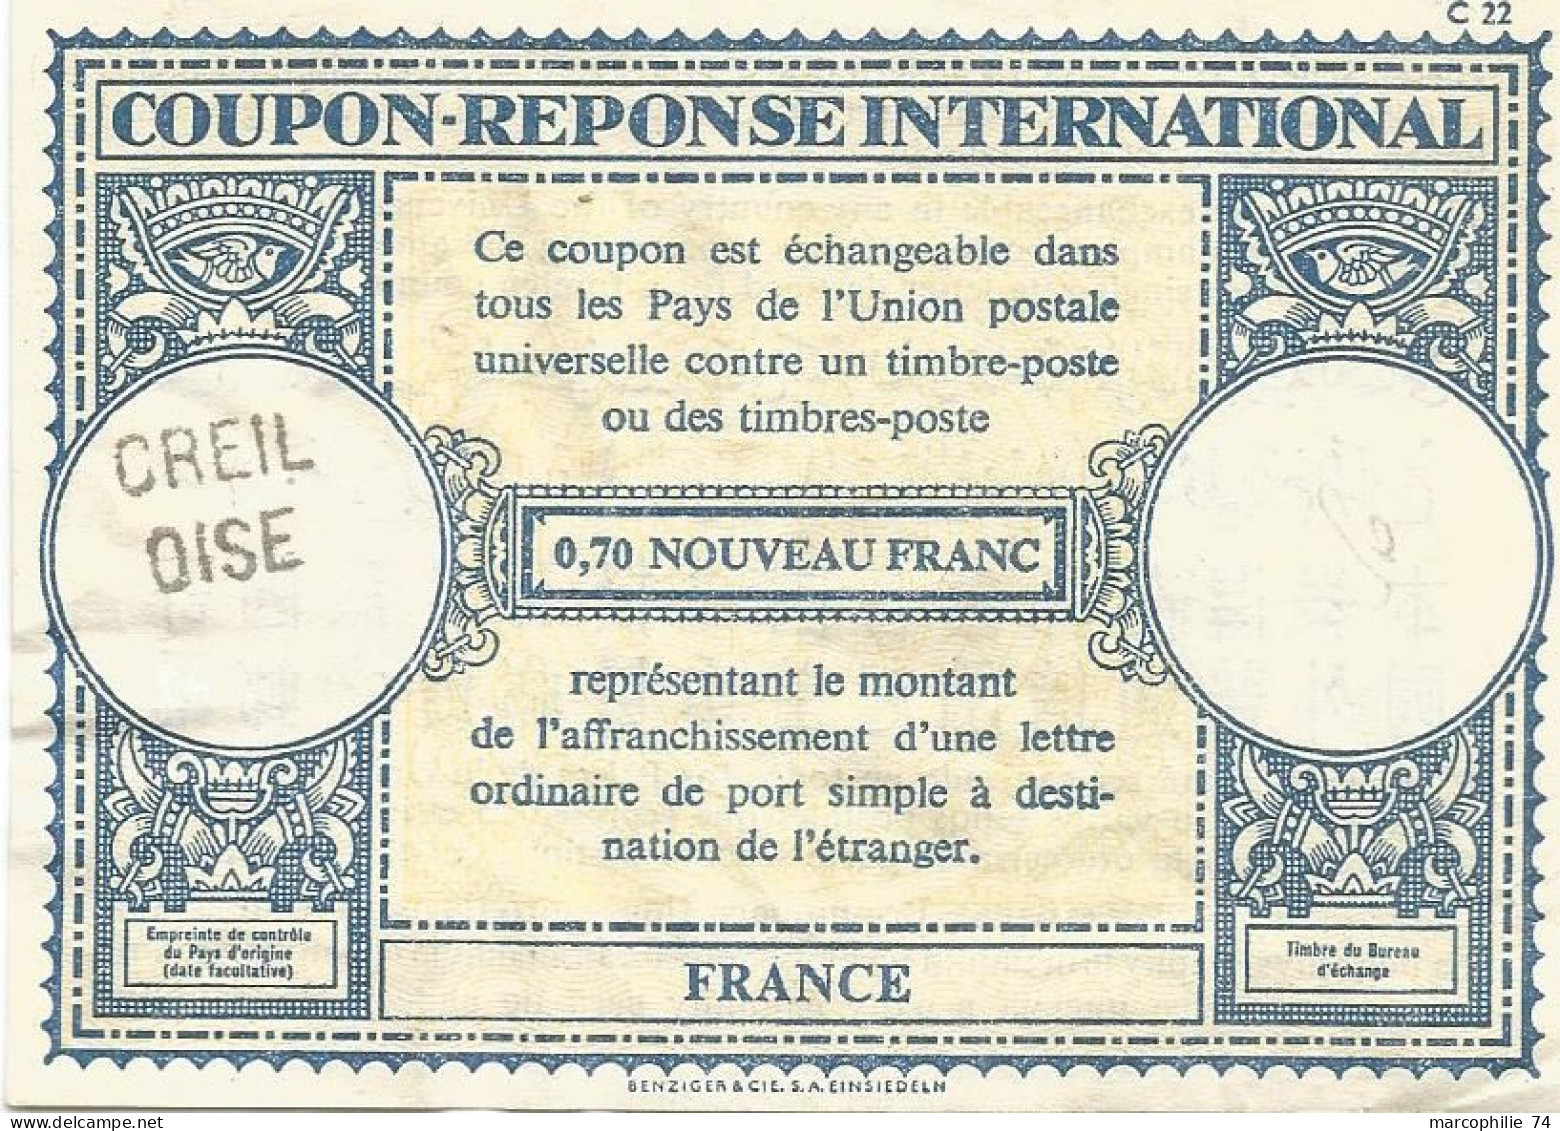 COUPON REPONSE INTERNATIONAL FRANCE 0.70 NOUVEAU FRANC GRIFFE CREIL OISE - Cupón-respuesta